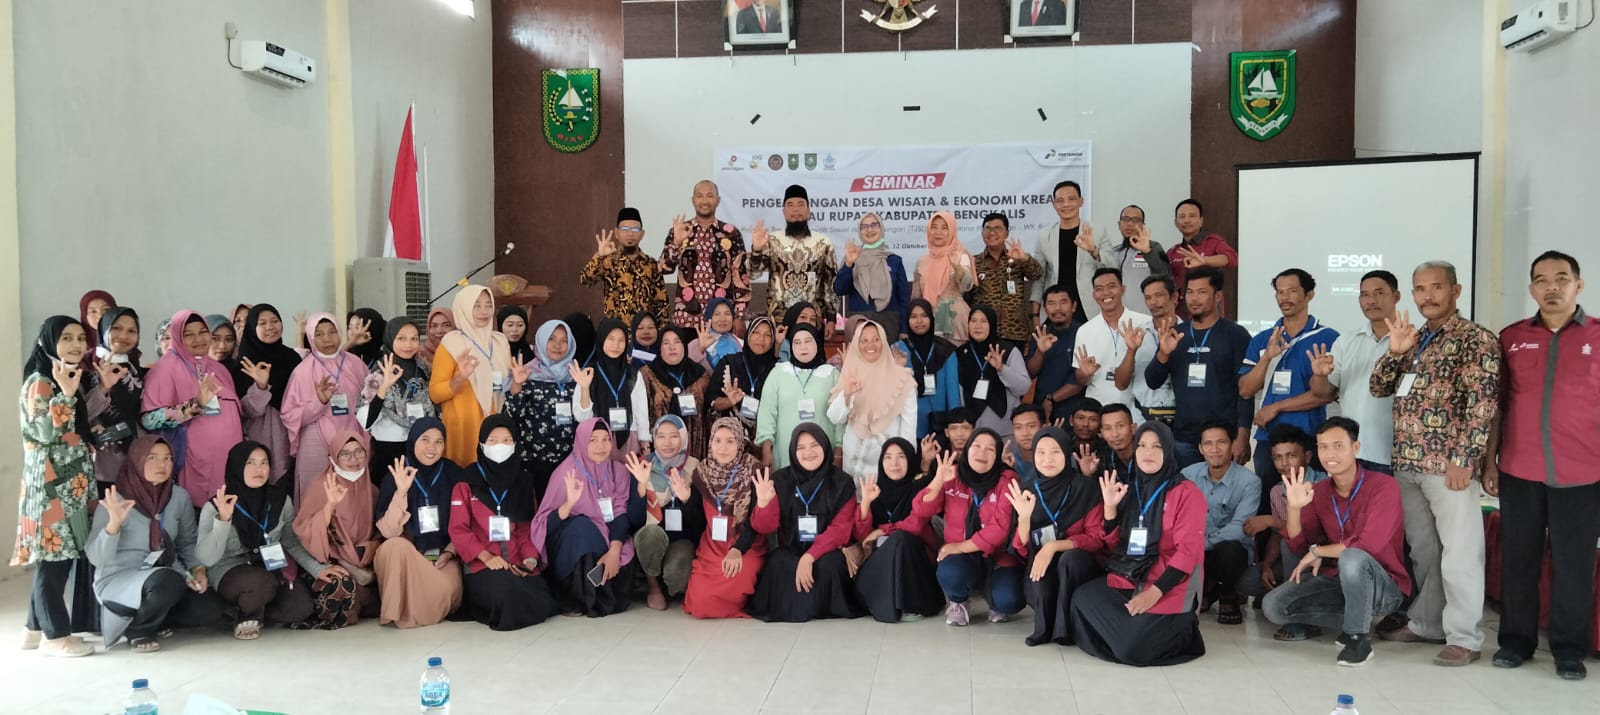 Kembangkan Desa Wisata dan Ekonomi Kreatif Pulau Rupat, Pemkab Gandeng PT PHR Gelar Seminar 